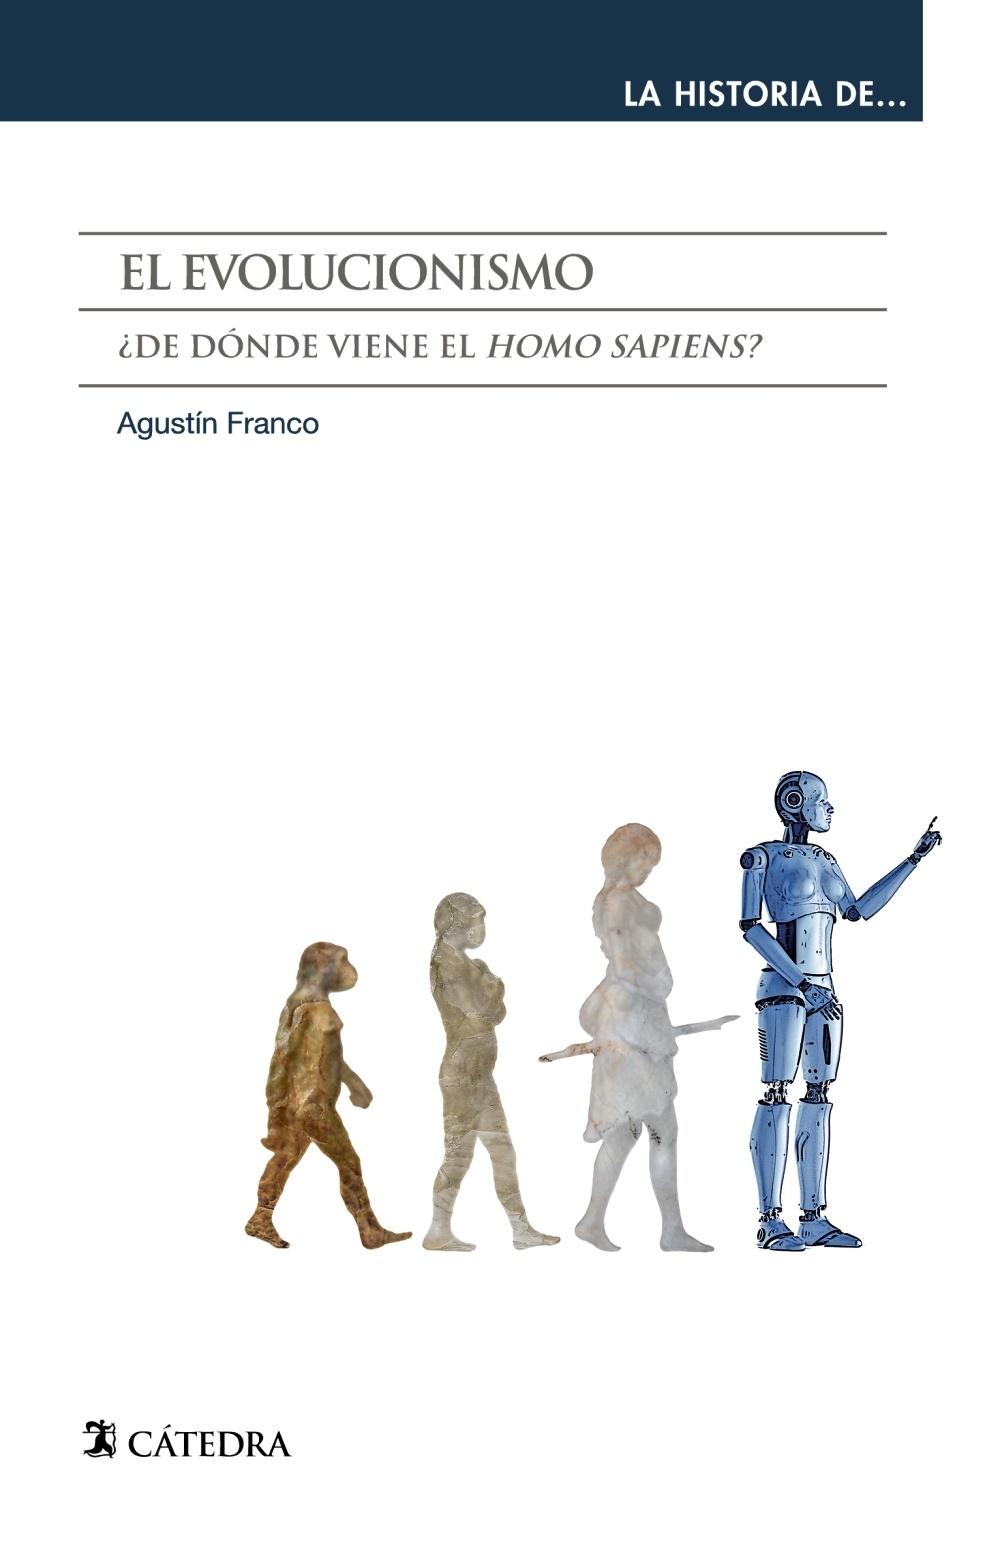 El Evolucionismo "¿De Dónde Viene el "Homo Sapiens"?". 